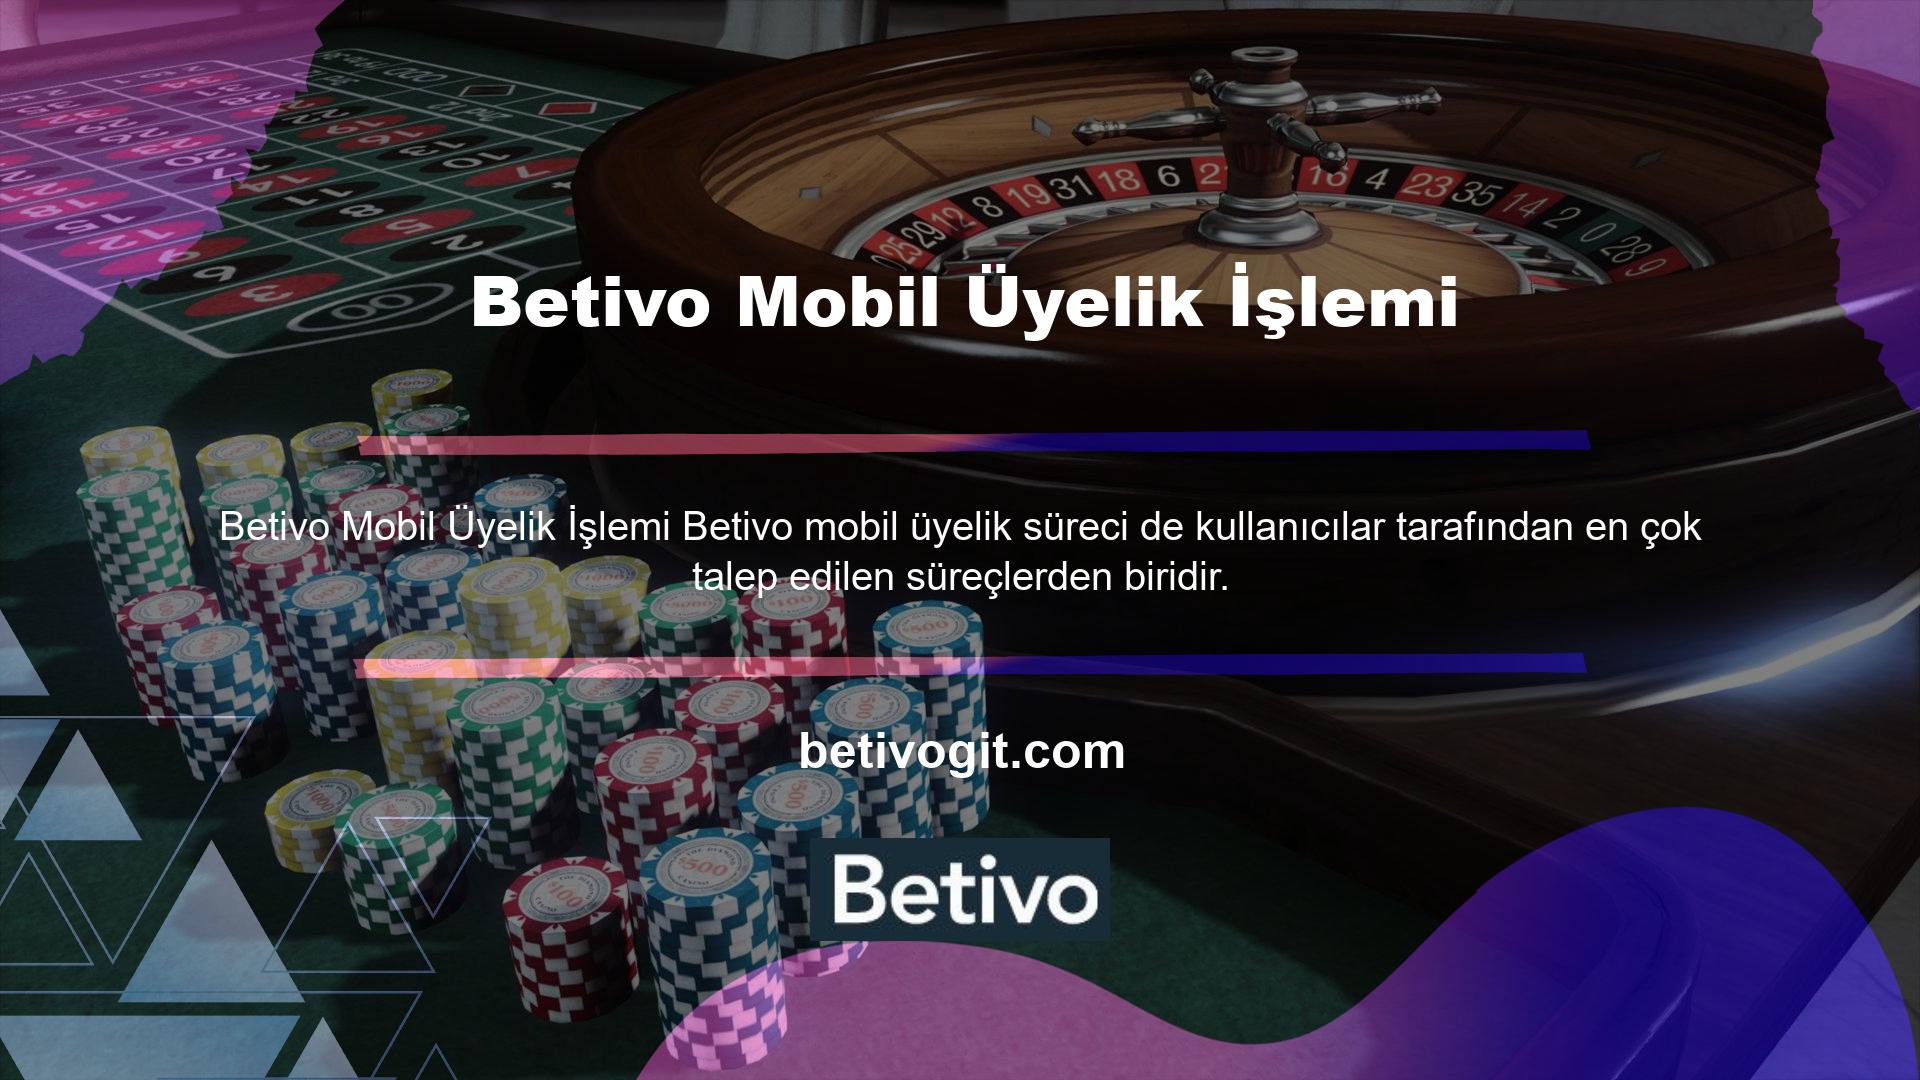 Cep telefonunuzdan Betivo sitesine kayıt olmak için öncelikle yeni Betivo adresinizi onaylamanız gerekmektedir